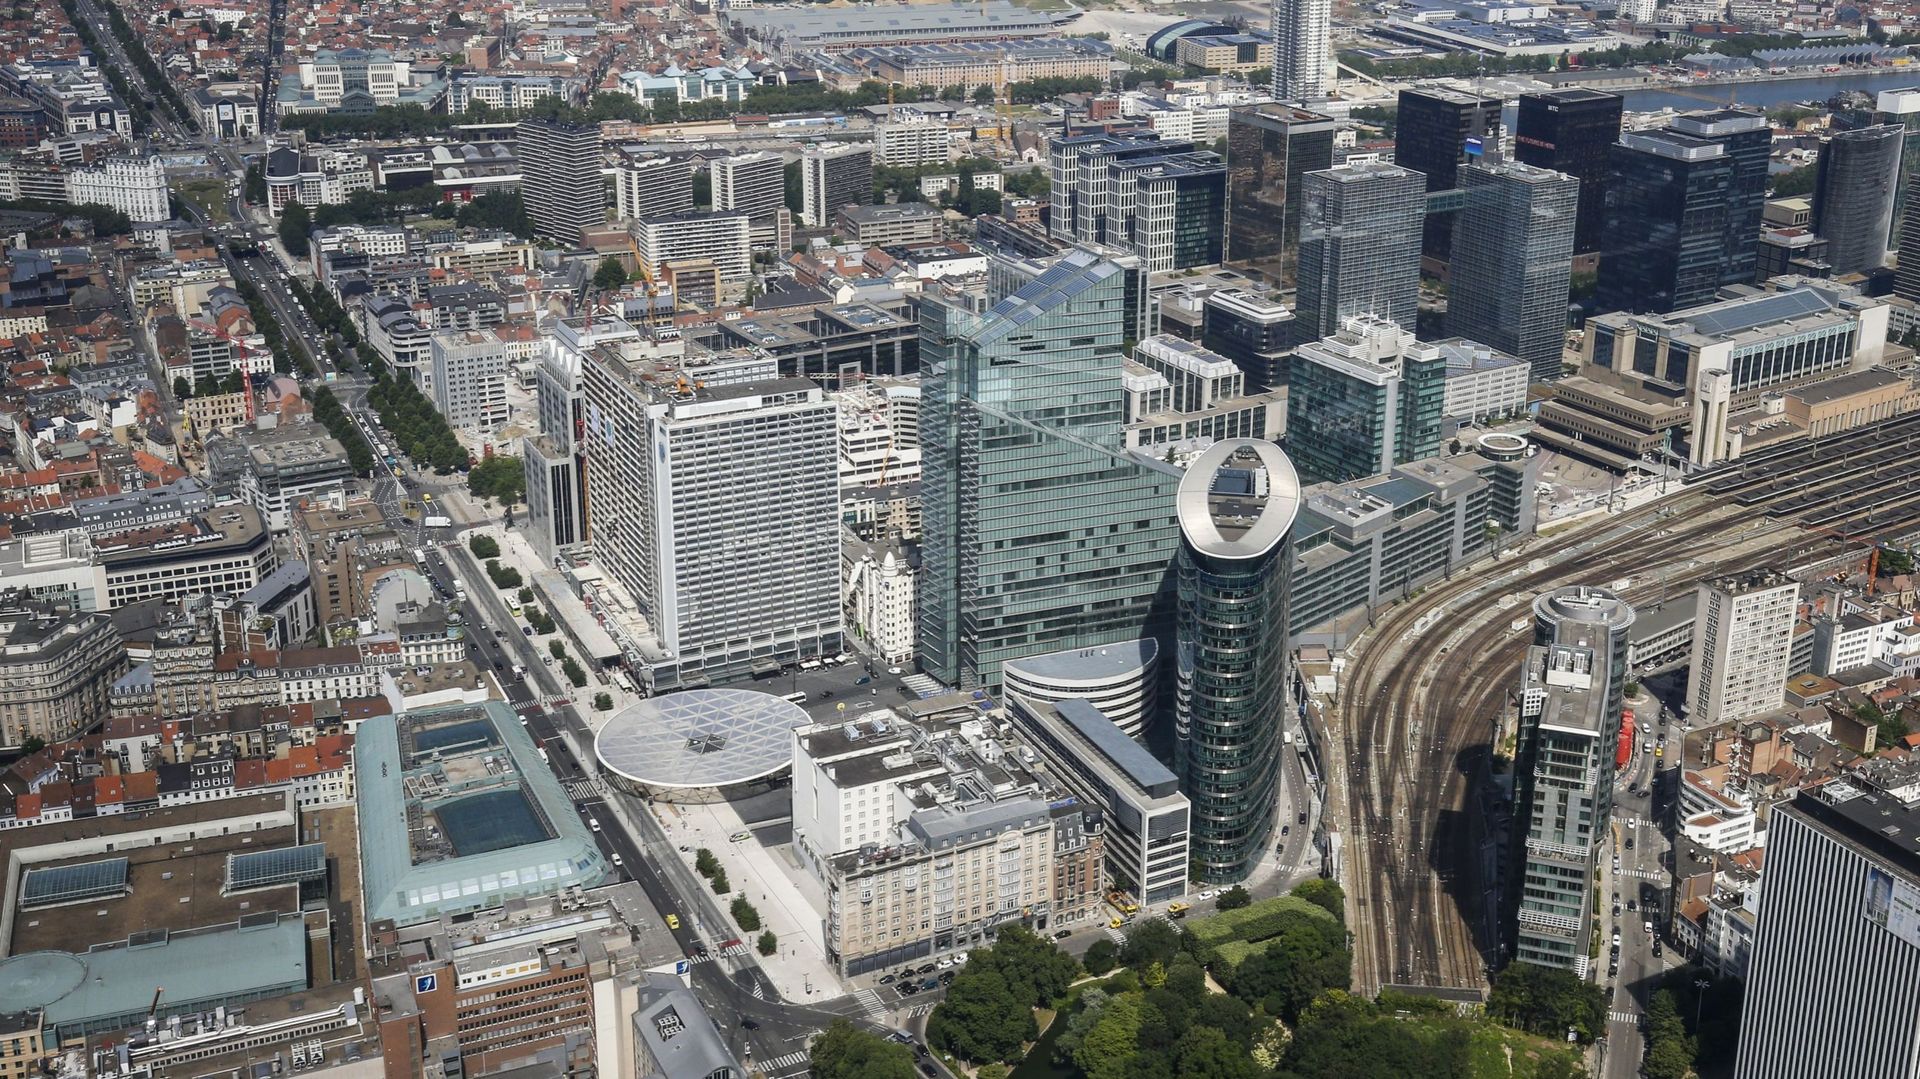 Le but est de trouver un juste équilibre entre urbanisation et espaces verts. Ici, une vue aérienne du centre-ville de Bruxelles, avec le centre commercial City 2 (devant à gauche) et la Place Rogier – Rogierplein rénovée (centre à gauche), les tours de b